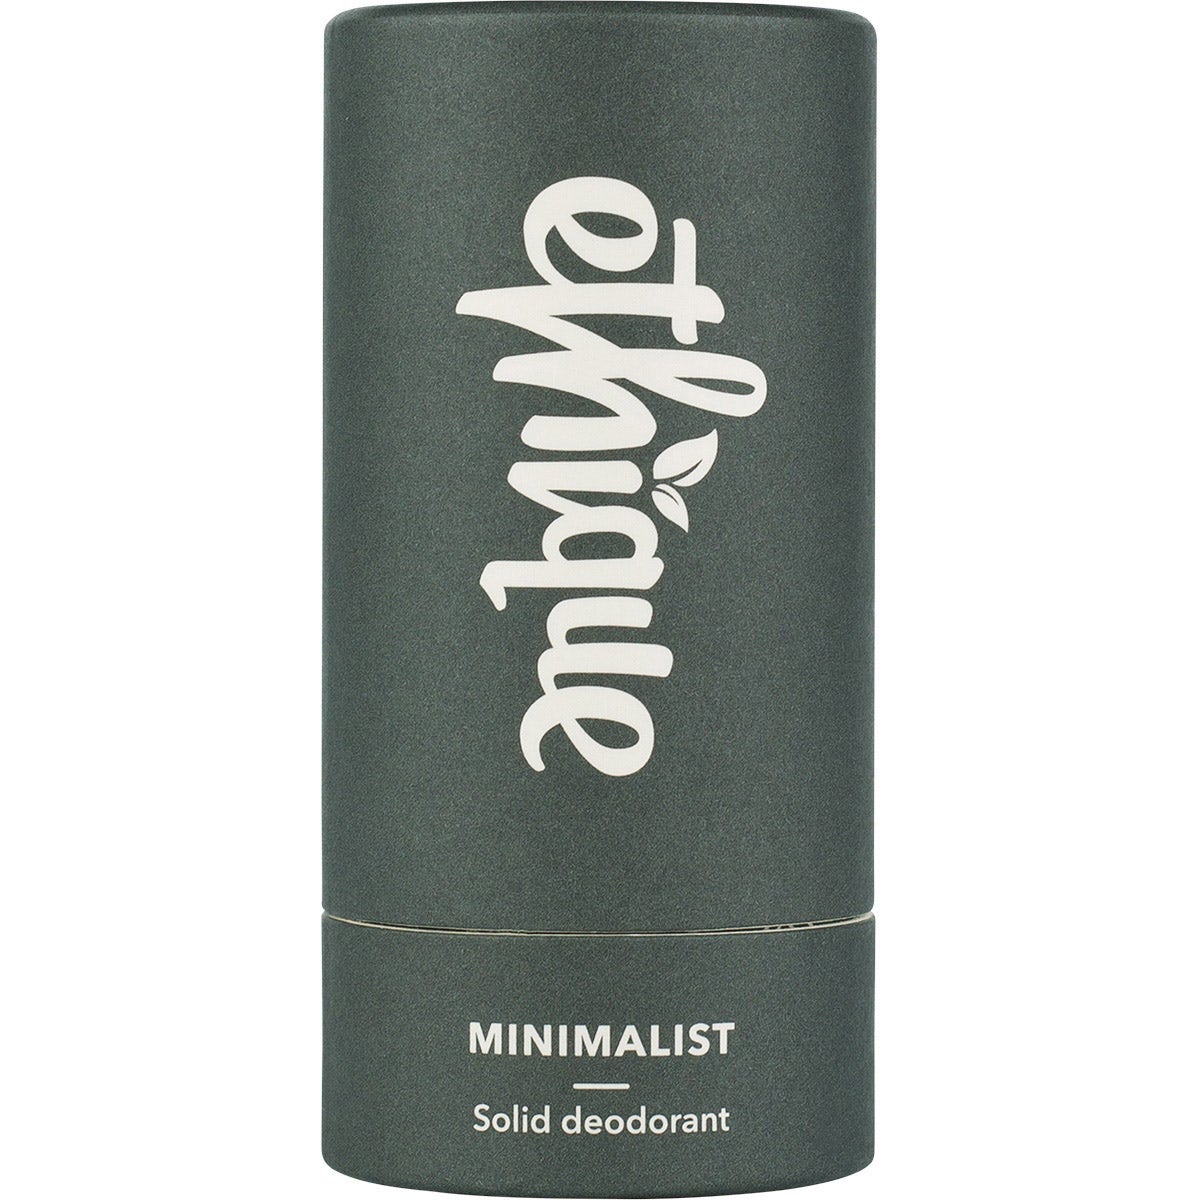 Ethique Botanica Solid Deodorant - Minimalist - Unscented  (70g)